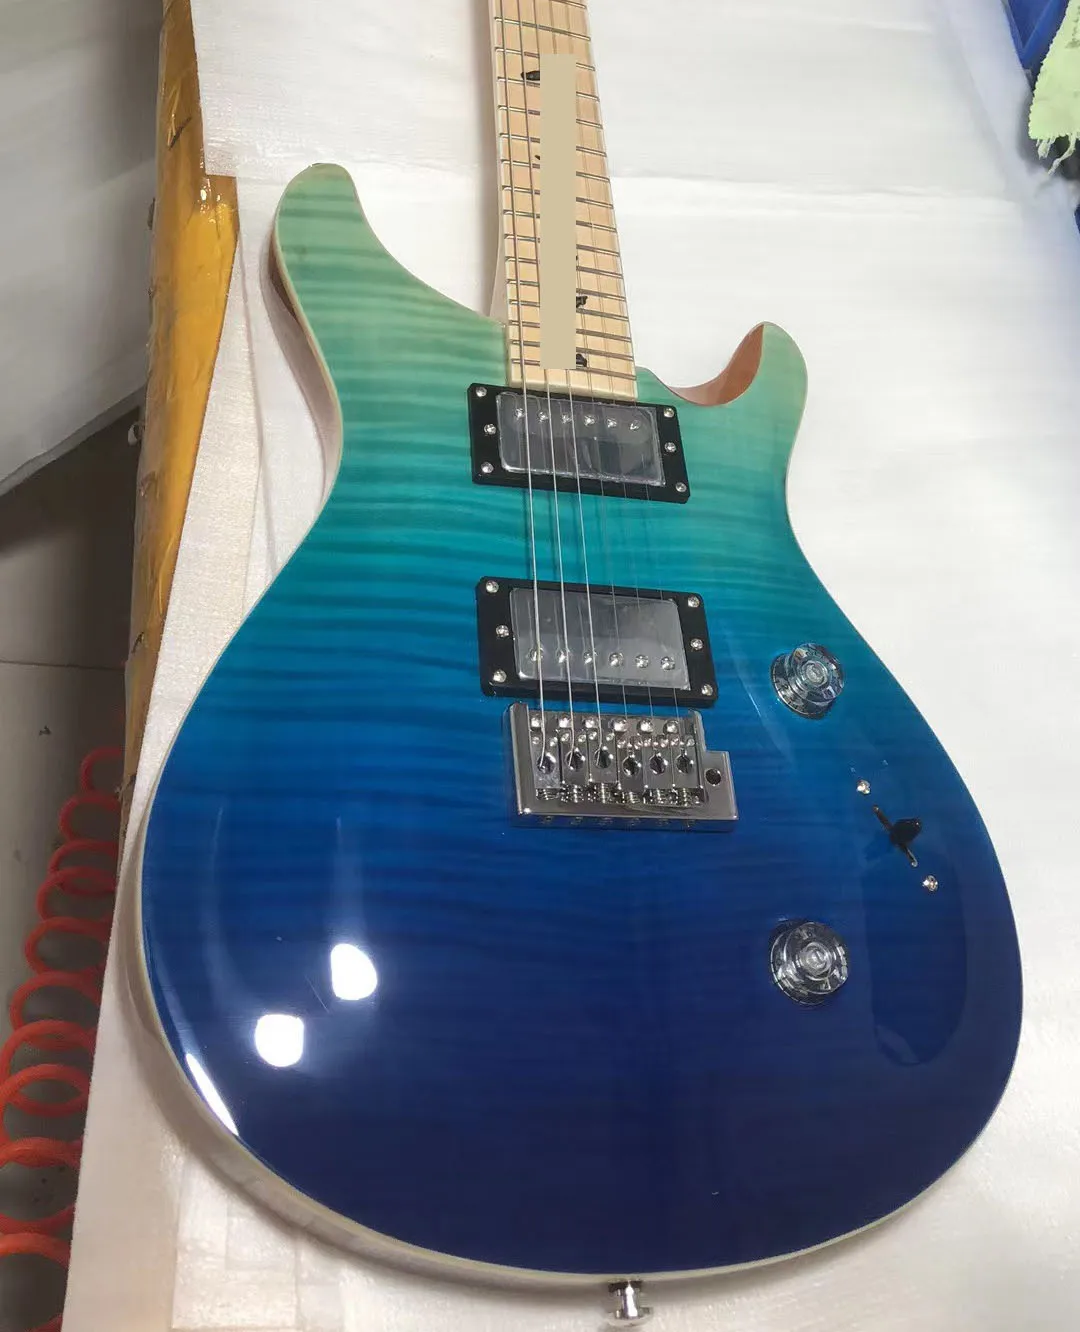 

Ome электрическая гитара красное дерево корпус отделка синяя хромированная фурнитура